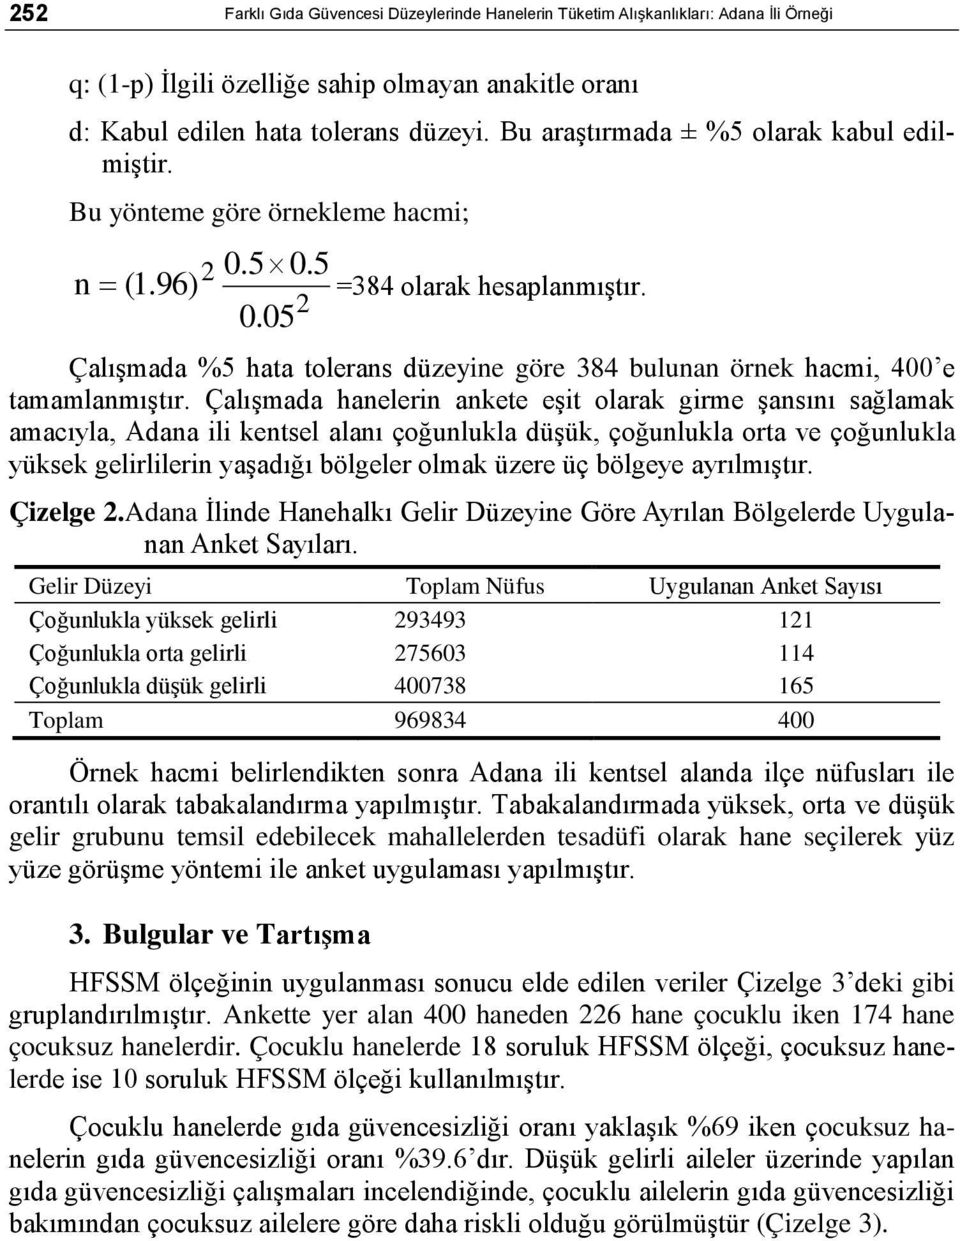 Çalışmada hanelerin ankete eşit olarak girme şansını sağlamak amacıyla, Adana ili kentsel alanı çoğunlukla düşük, çoğunlukla orta ve çoğunlukla yüksek gelirlilerin yaşadığı bölgeler olmak üzere üç